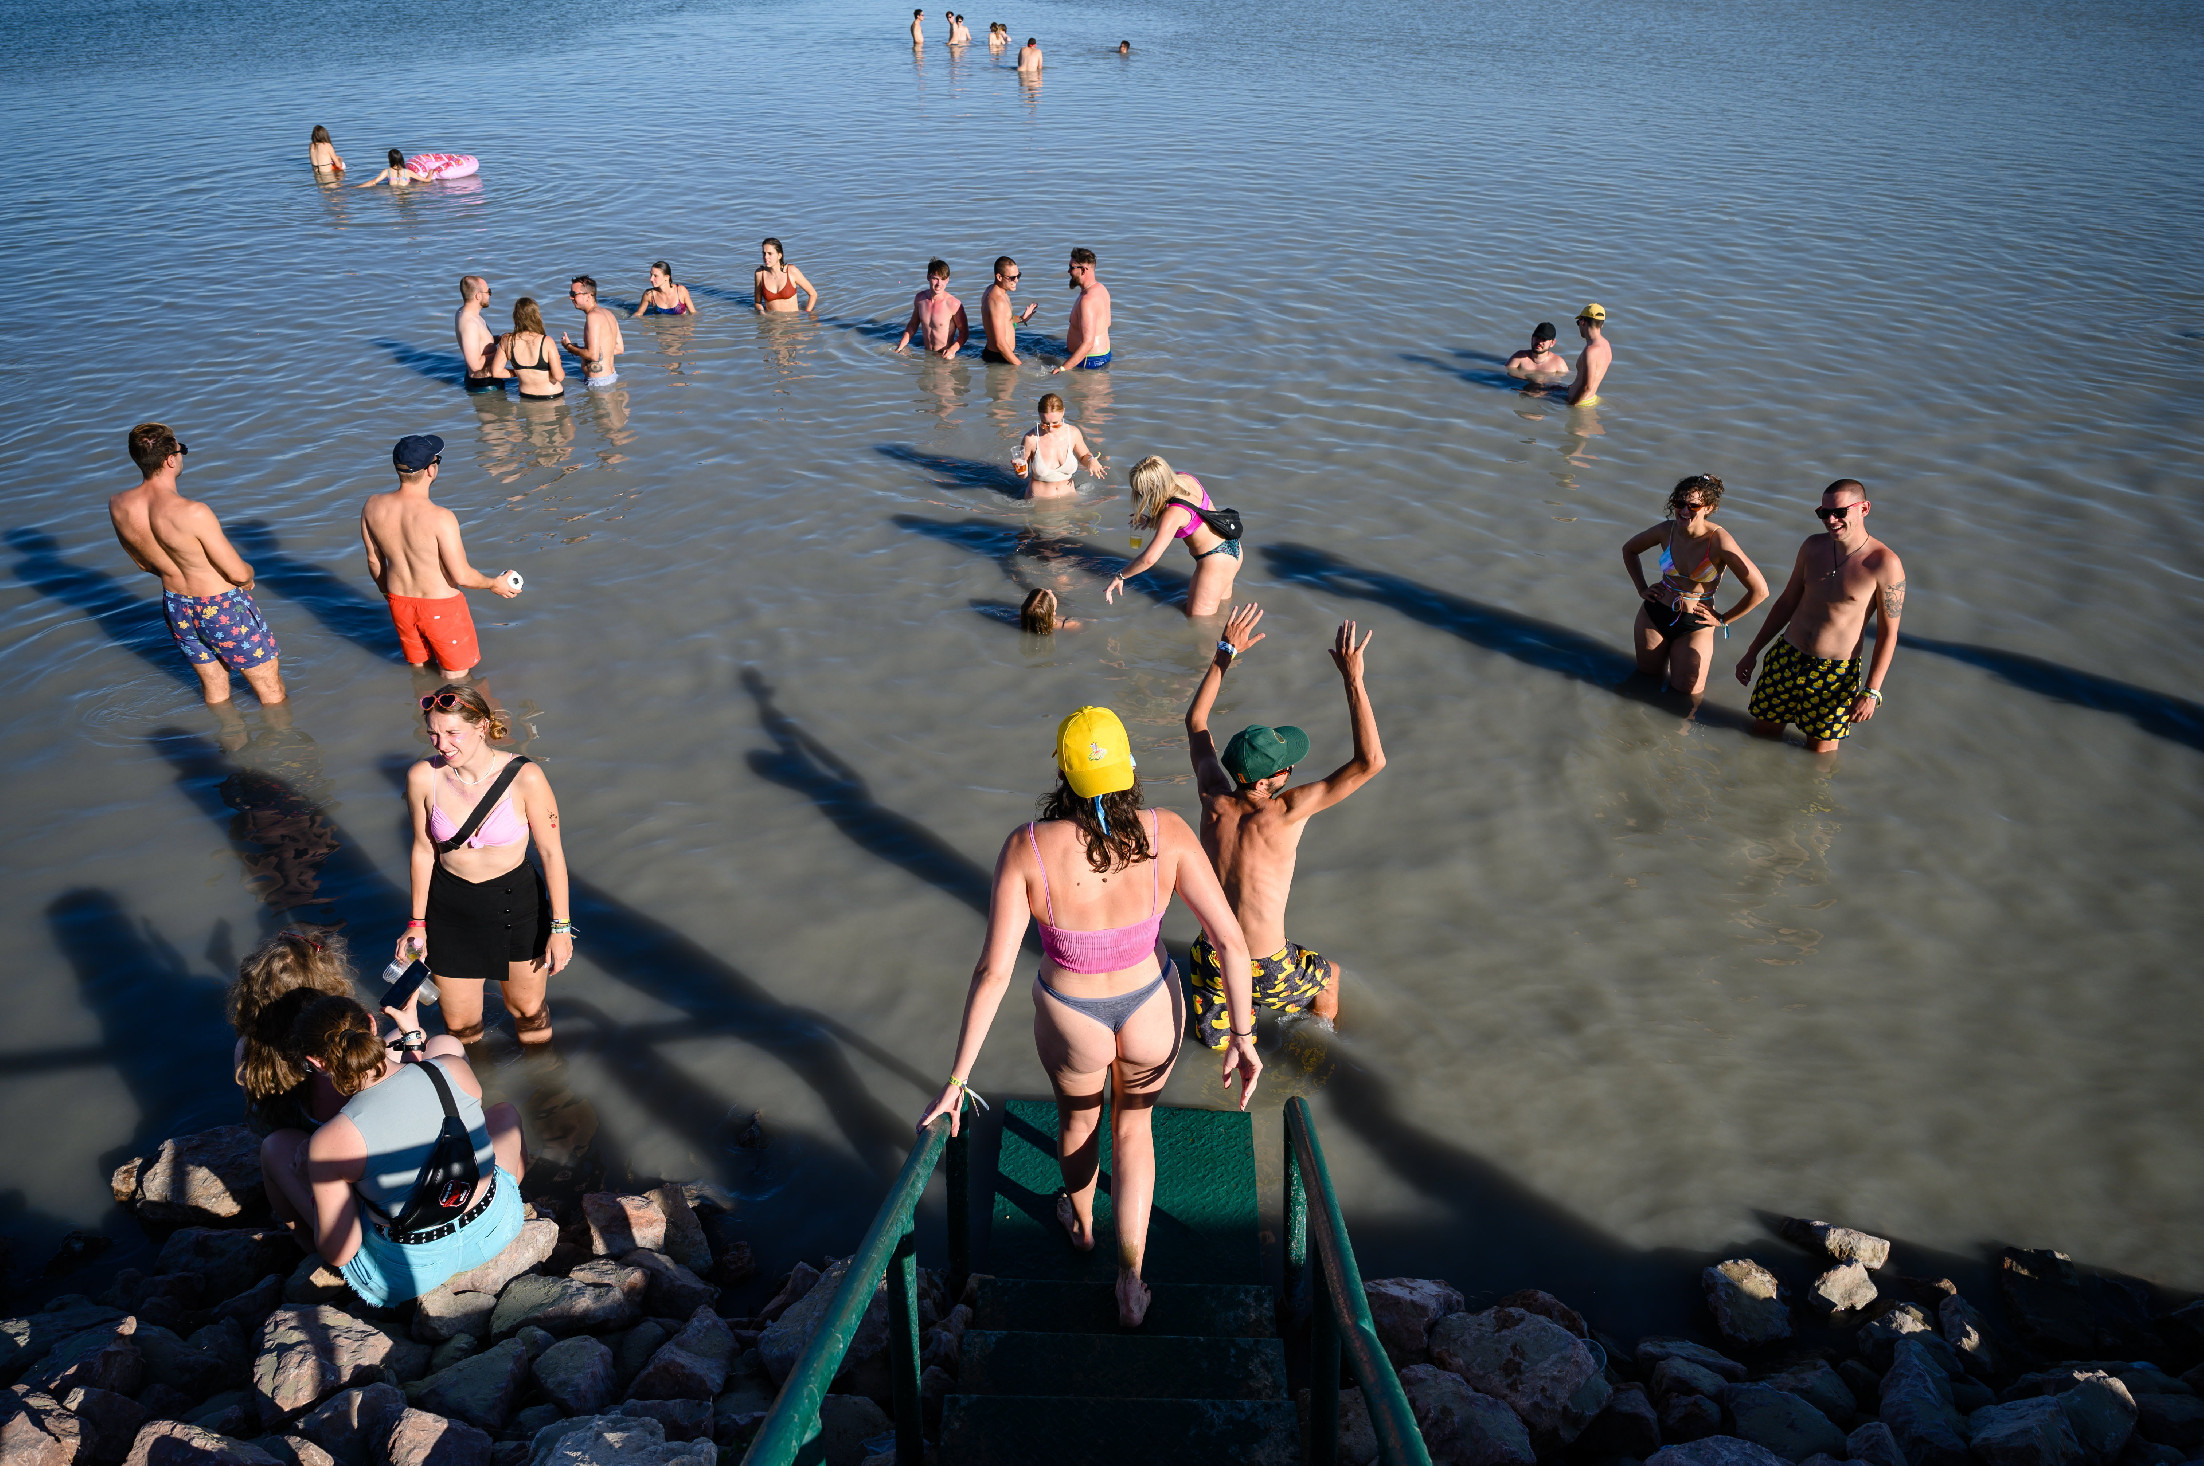 Rendkívüli hír – fürdési tilalmat rendeltek el a Velencei-tó egyik strandján